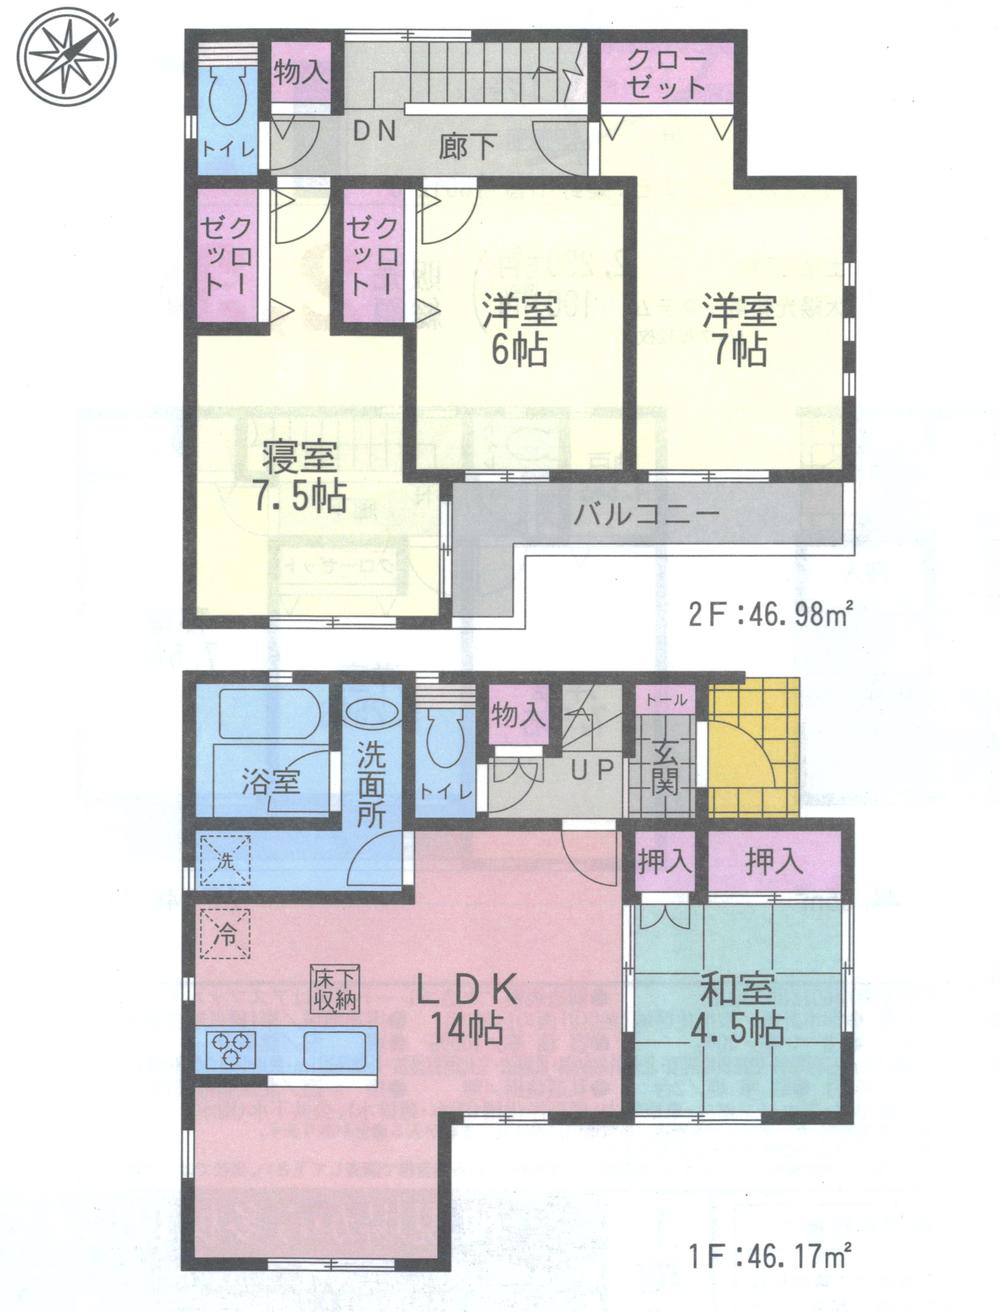 Floor plan. 20.8 million yen, 4LDK, Land area 145.48 sq m , Building area 93.15 sq m